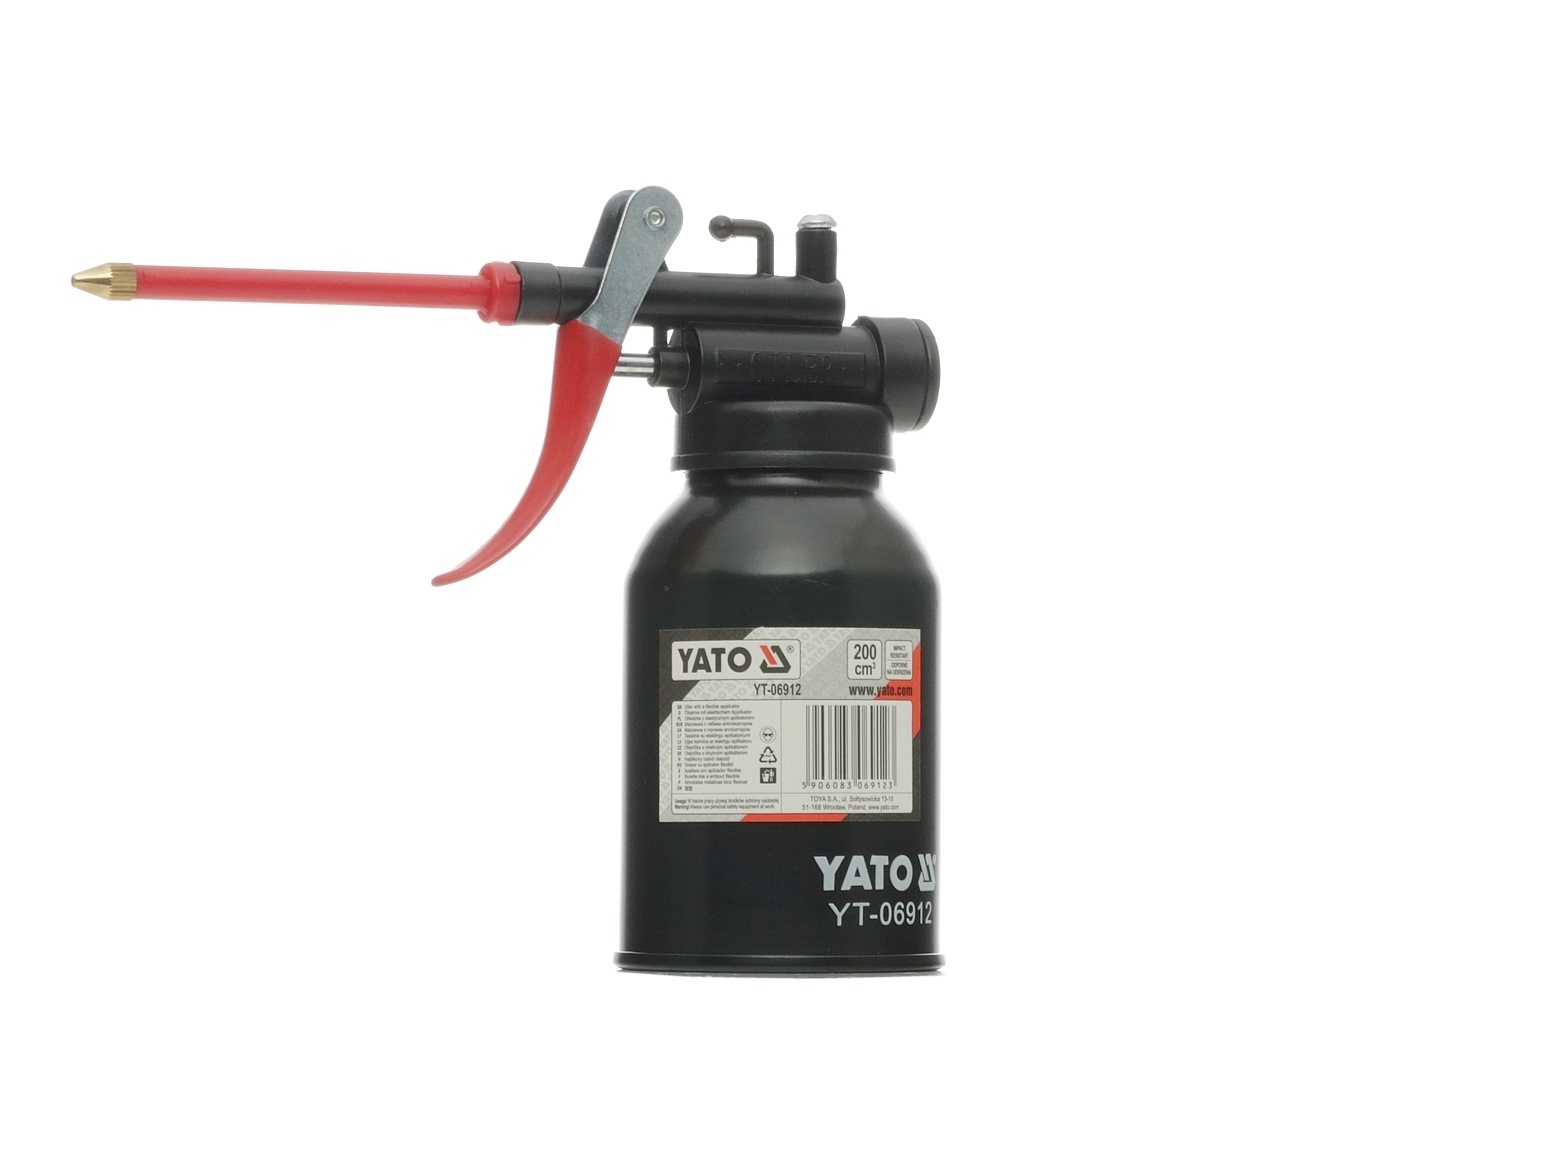 Image of YATO Pompa grasso lubrificante YT-06912